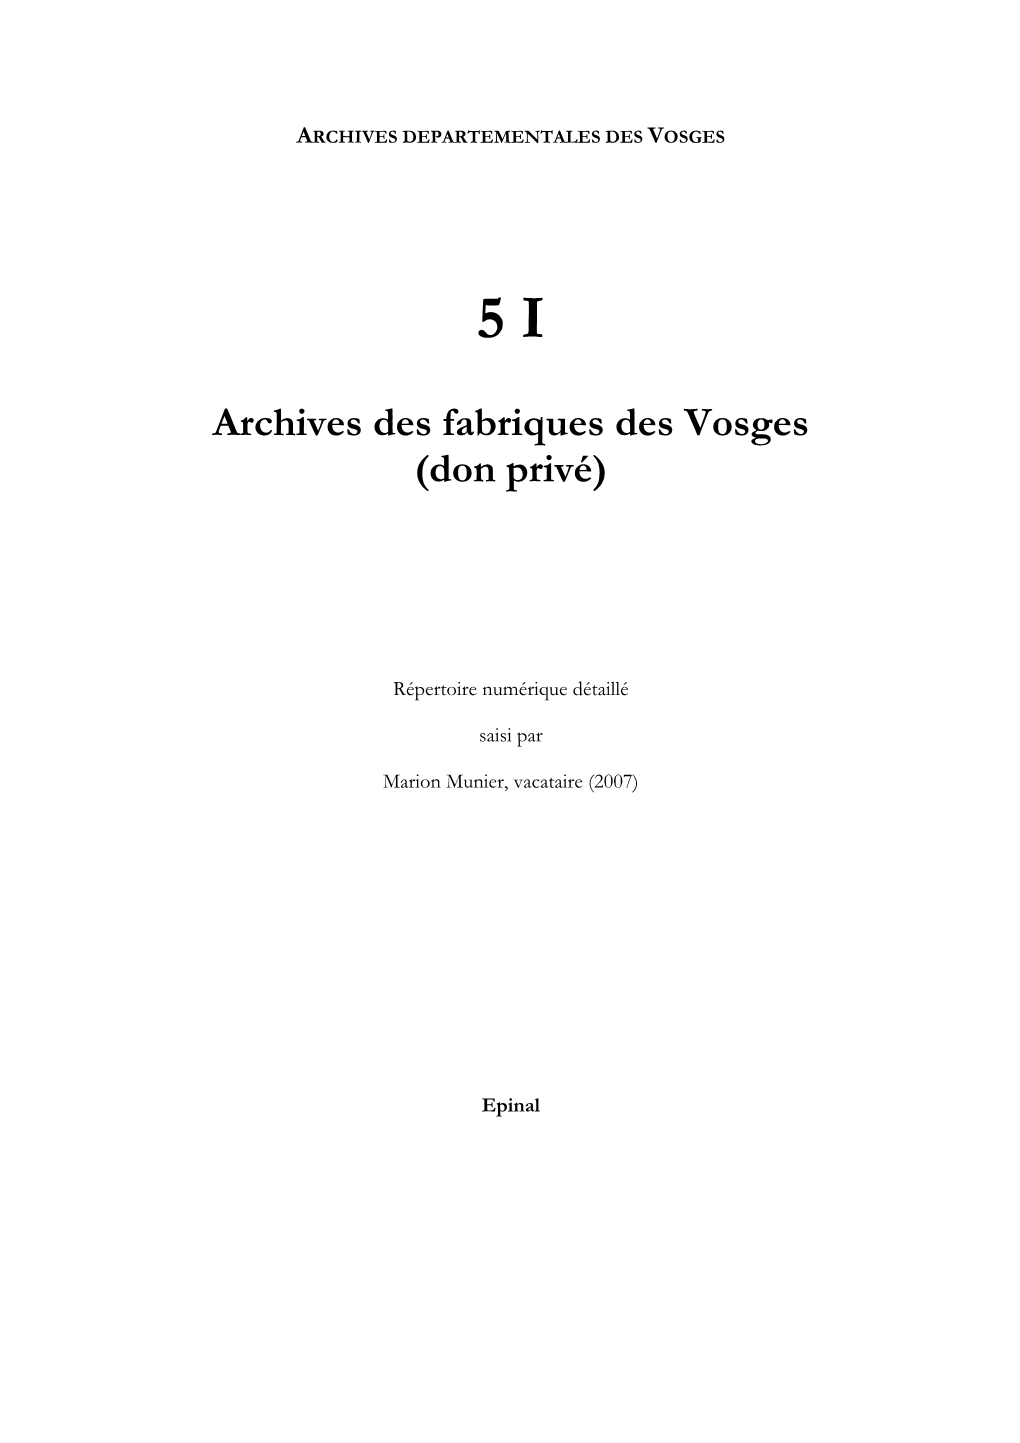 Archives Des Fabriques Des Vosges (Don Privé)